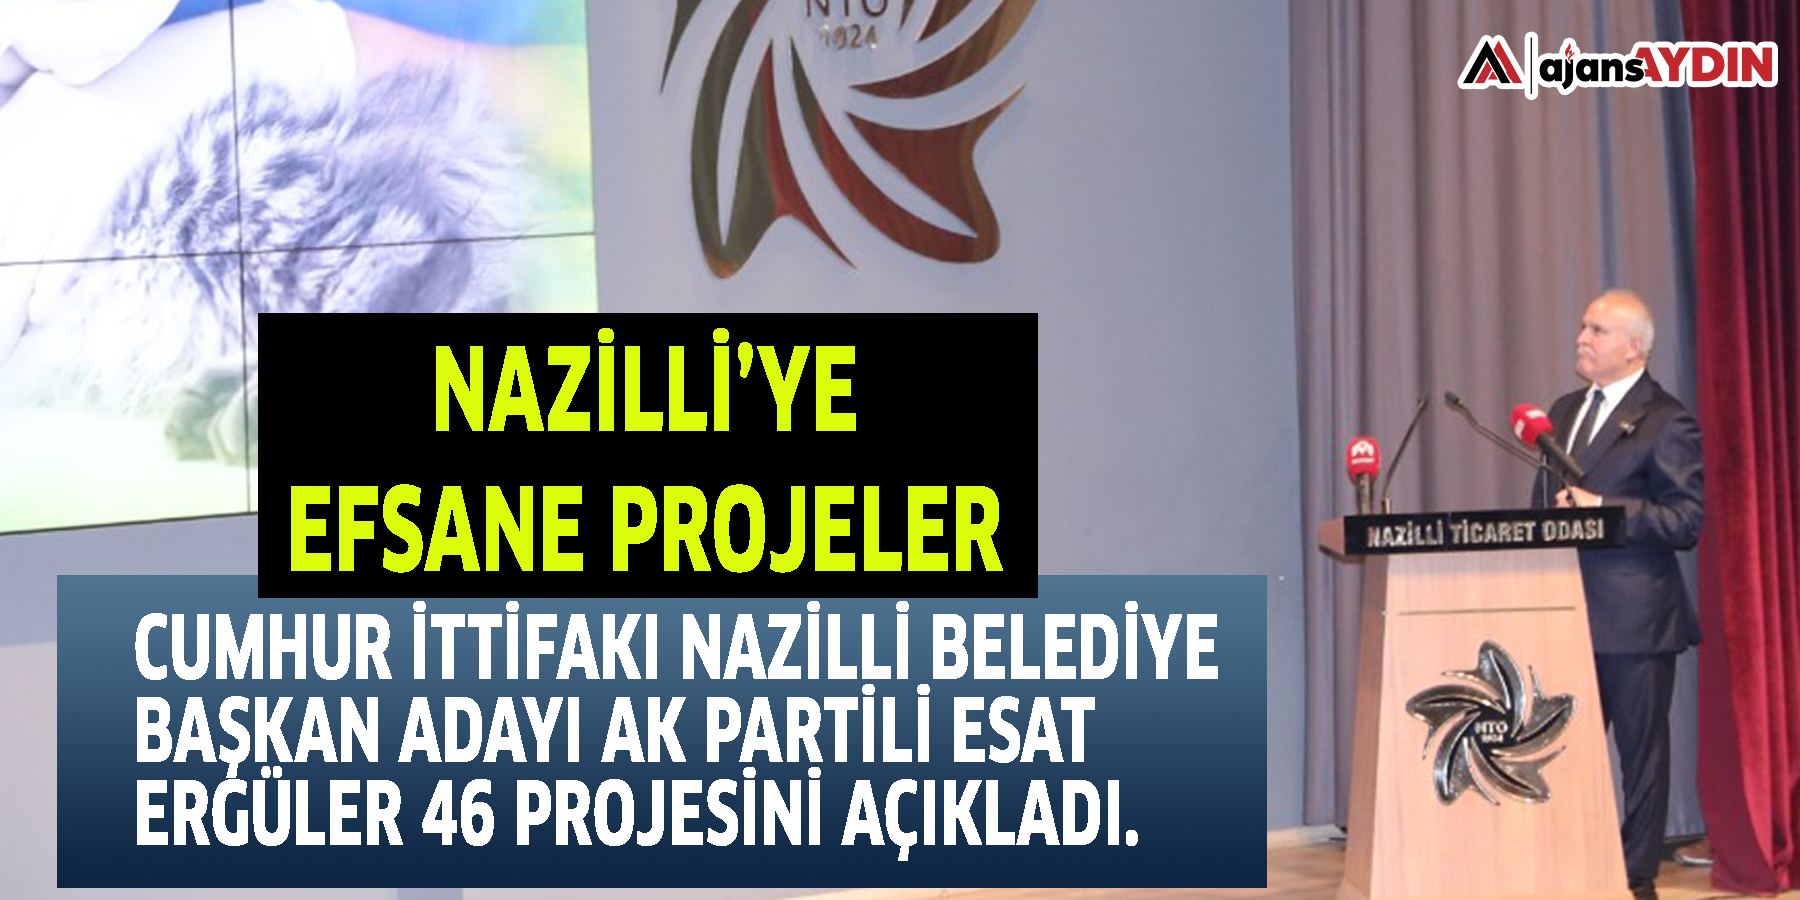 Nazilli’ye efsane projeler    Cumhur İttifakı Nazilli Belediye Başkan Adayı AK Partili Esat Ergüler 46 projesini açıkladı.